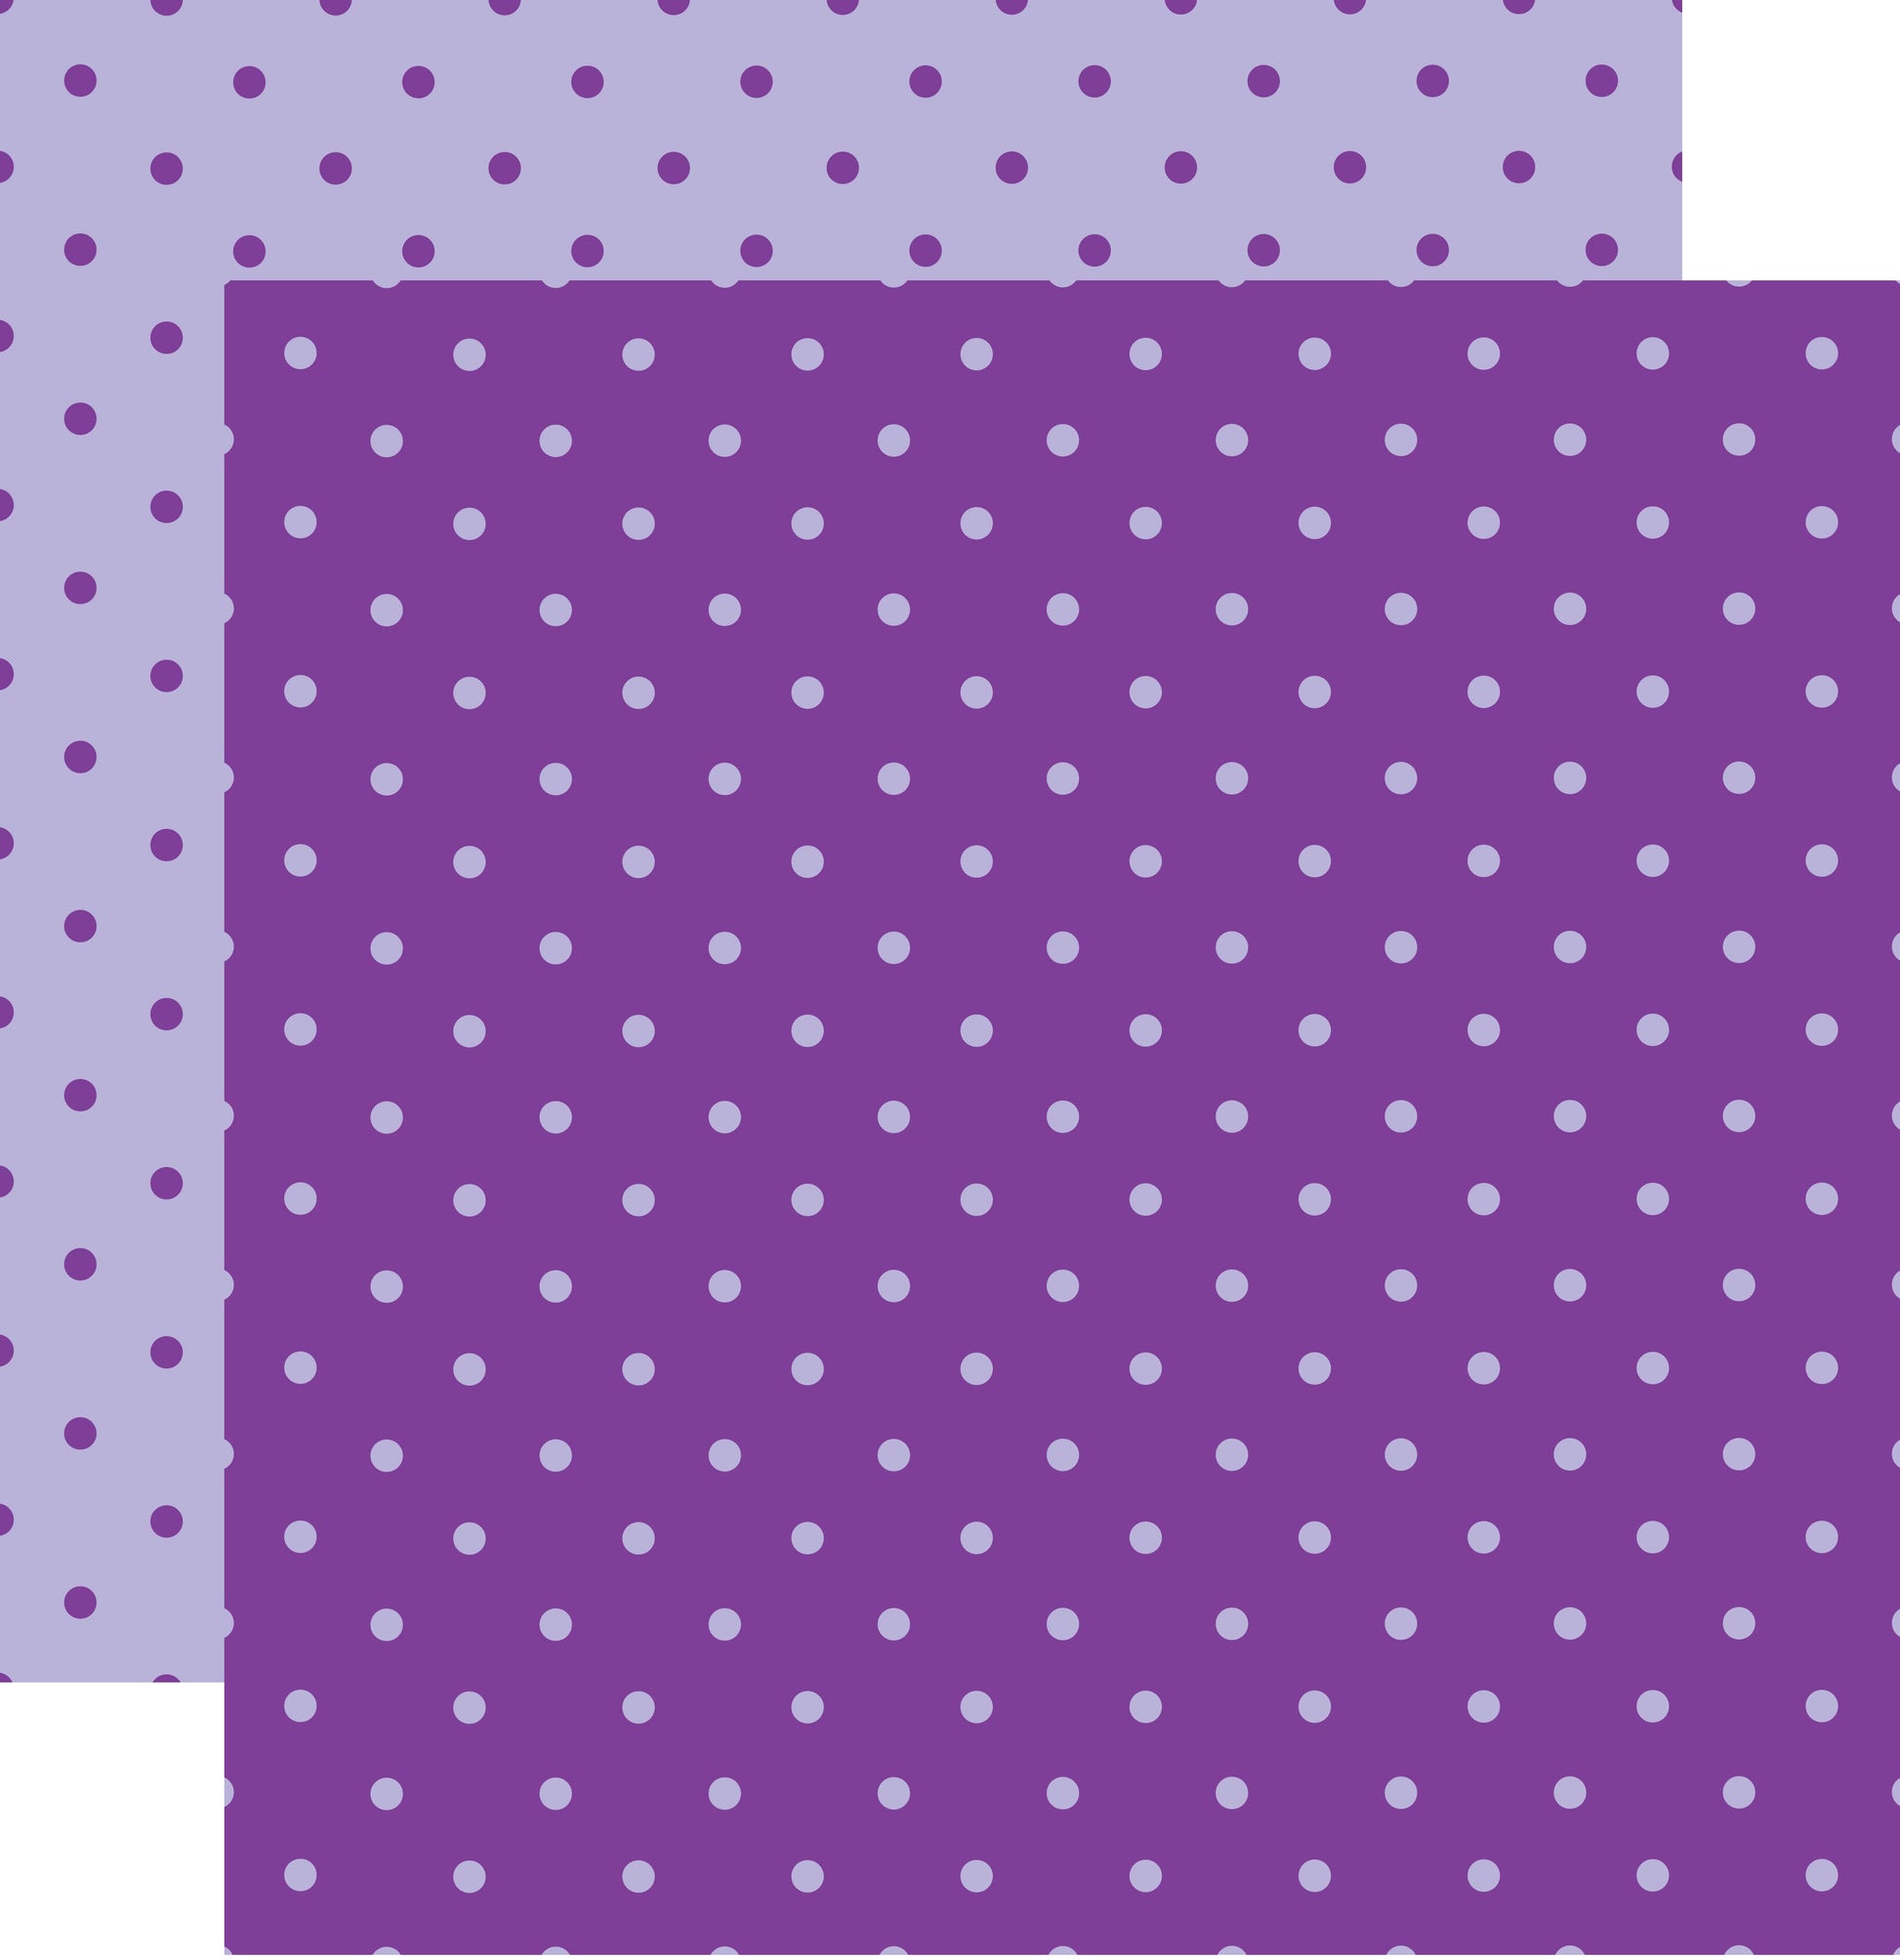 Purple on Purple Double Sided Polka Dot 12x12 Scrapbook Paper - 5